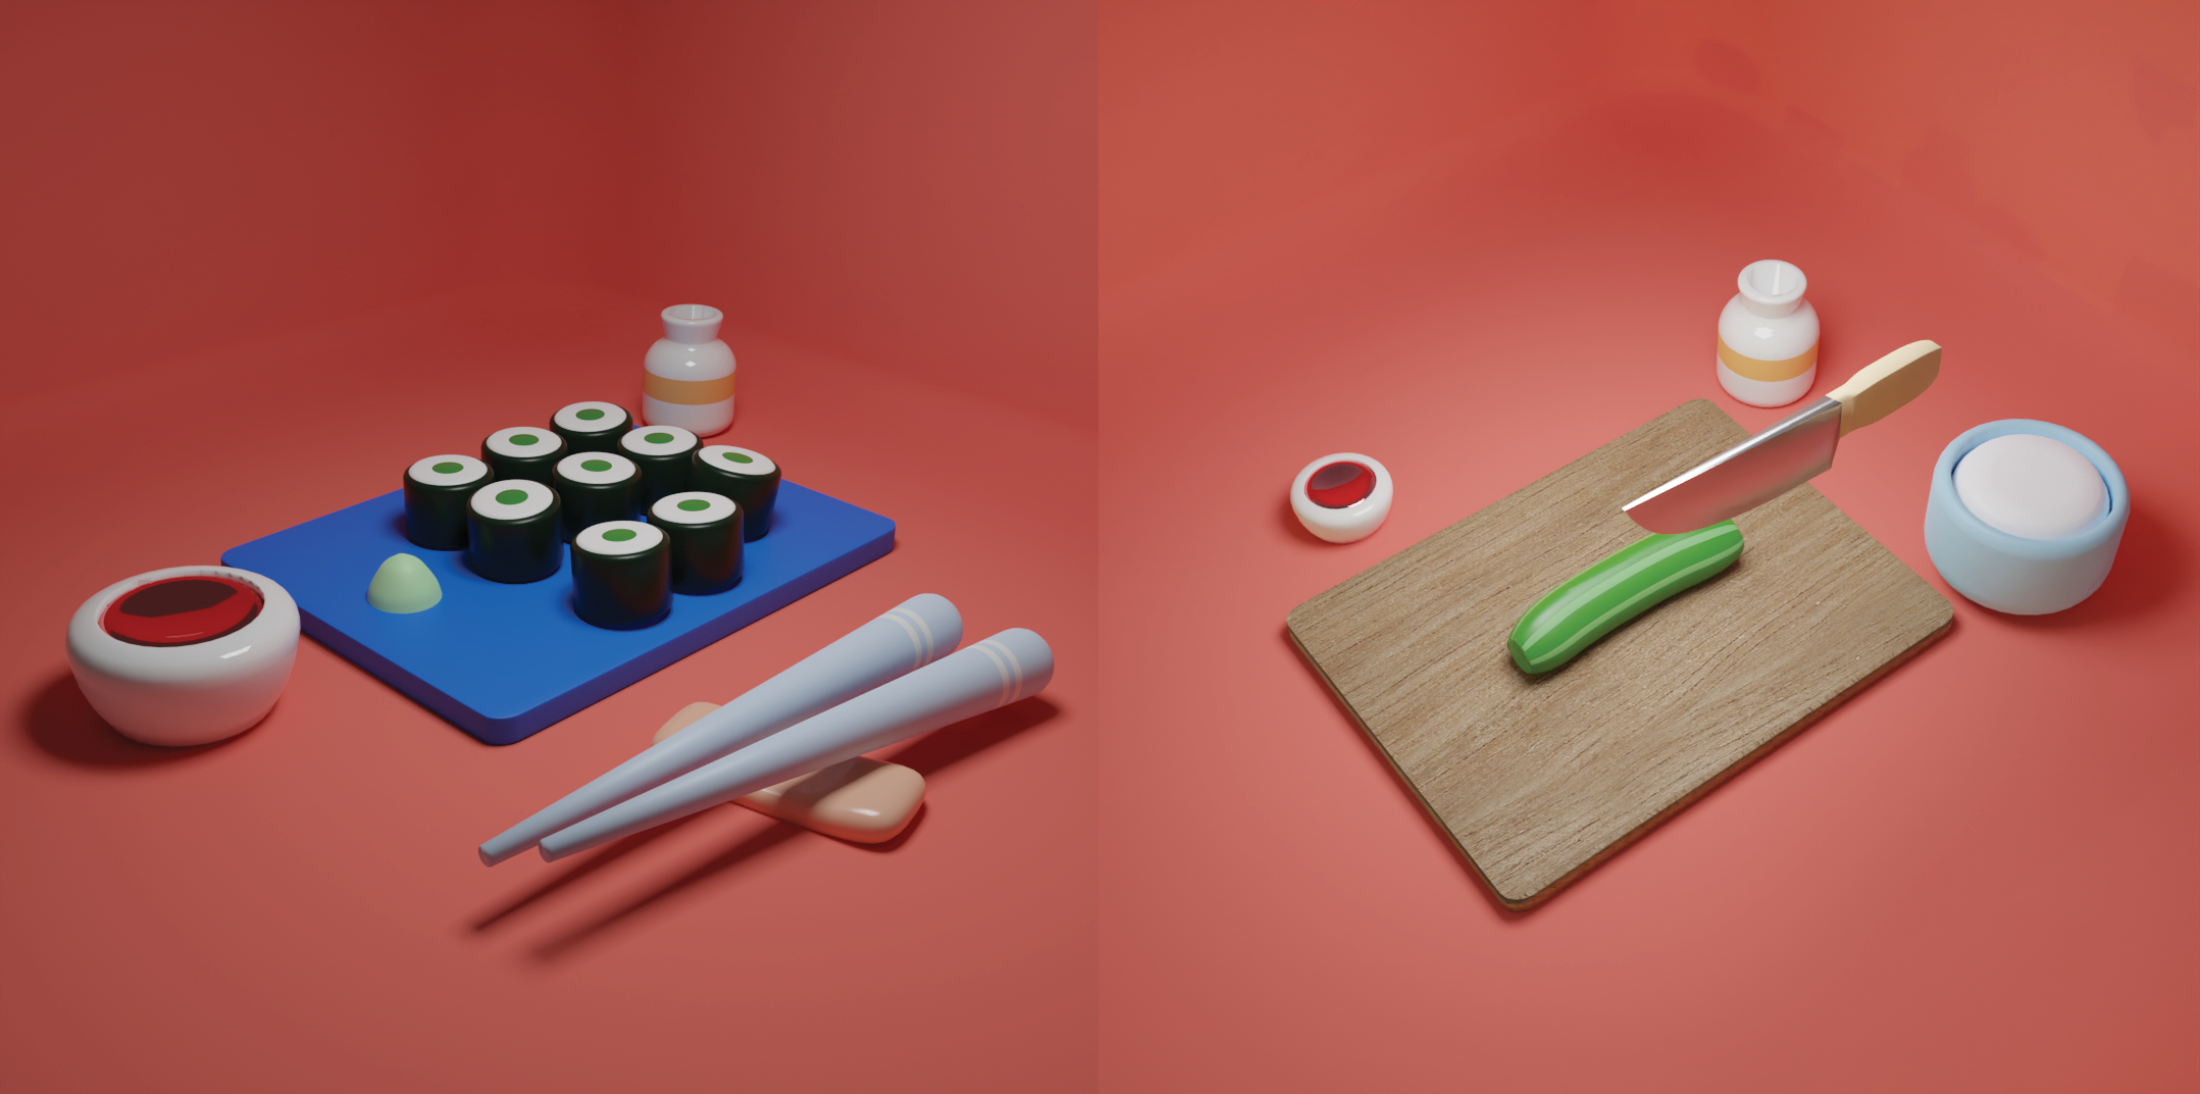 3D Sushi Making Video - Image 2